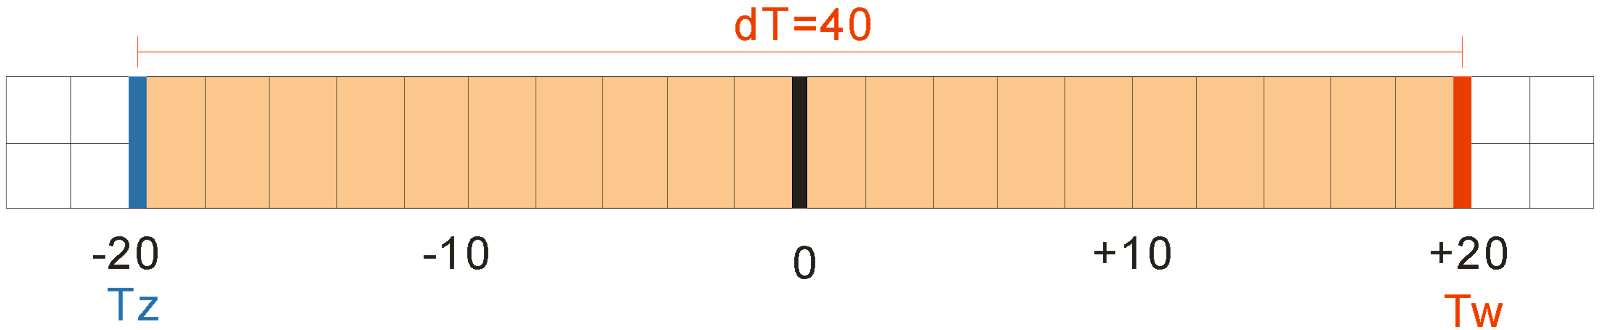 dT=40